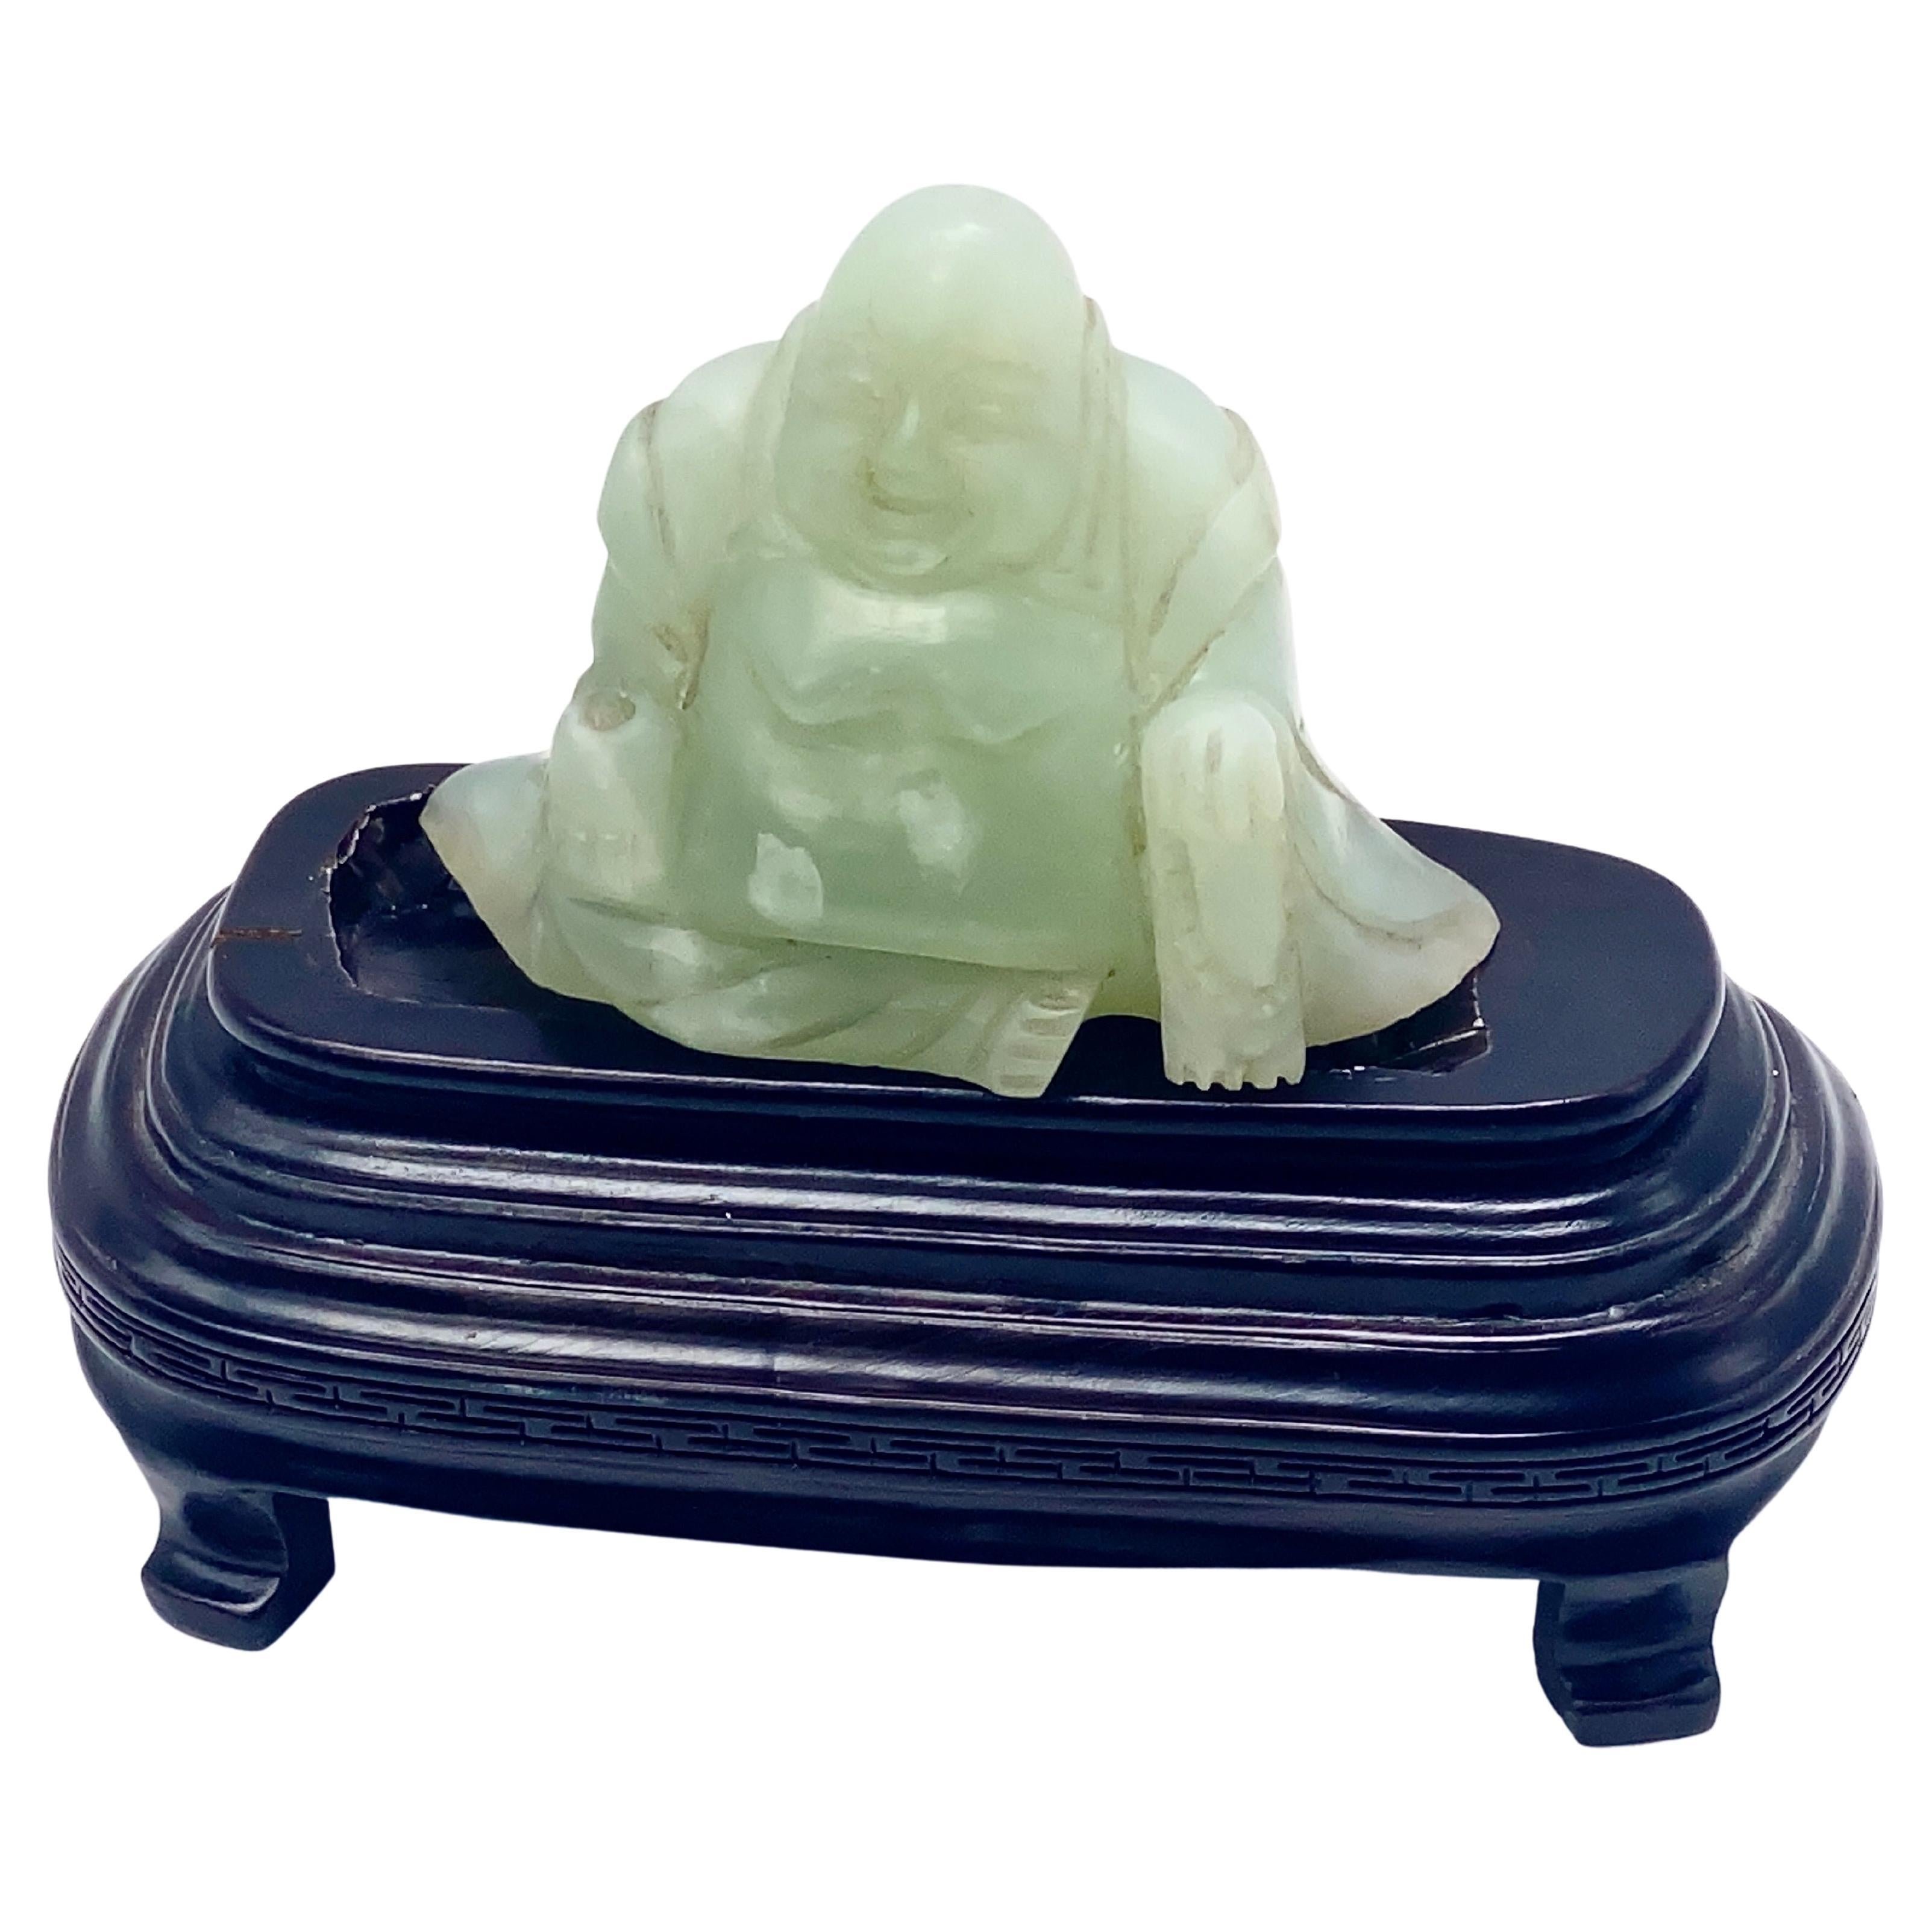 Chinesische geschnitzte Jade-Figurenskulptur eines lachenden Buddha, Budai, 20. Jahrhundert